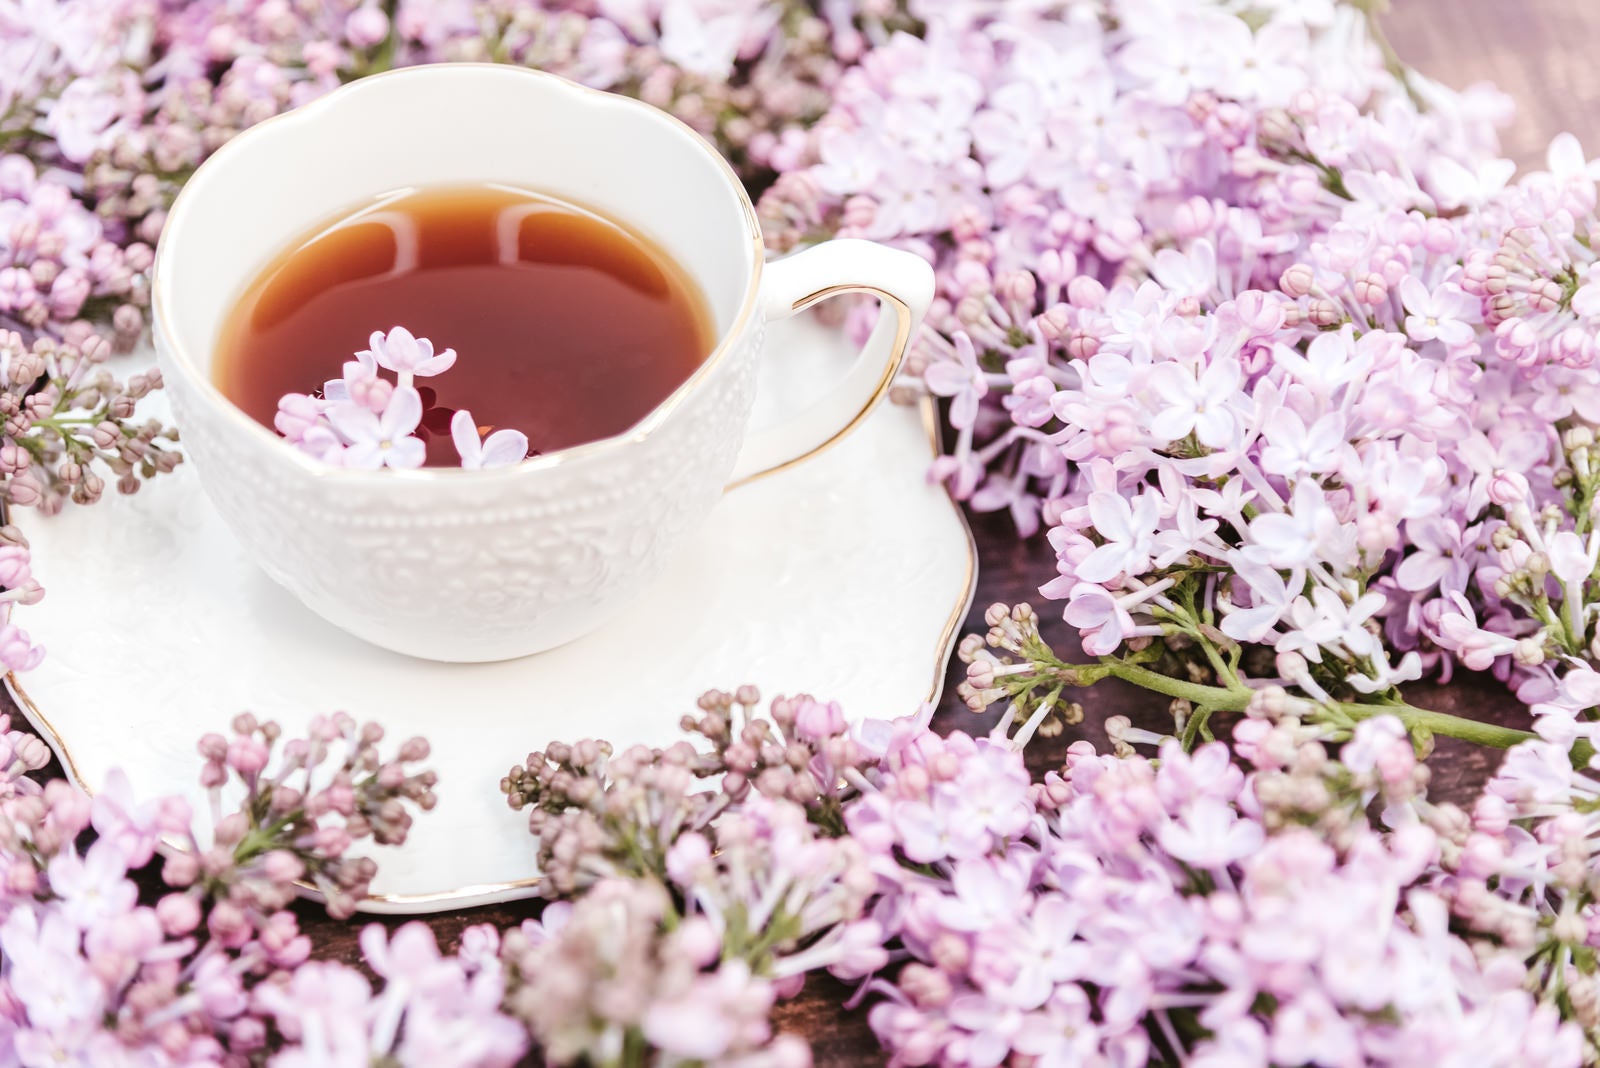 「ライラックに彩られた紅茶」の写真